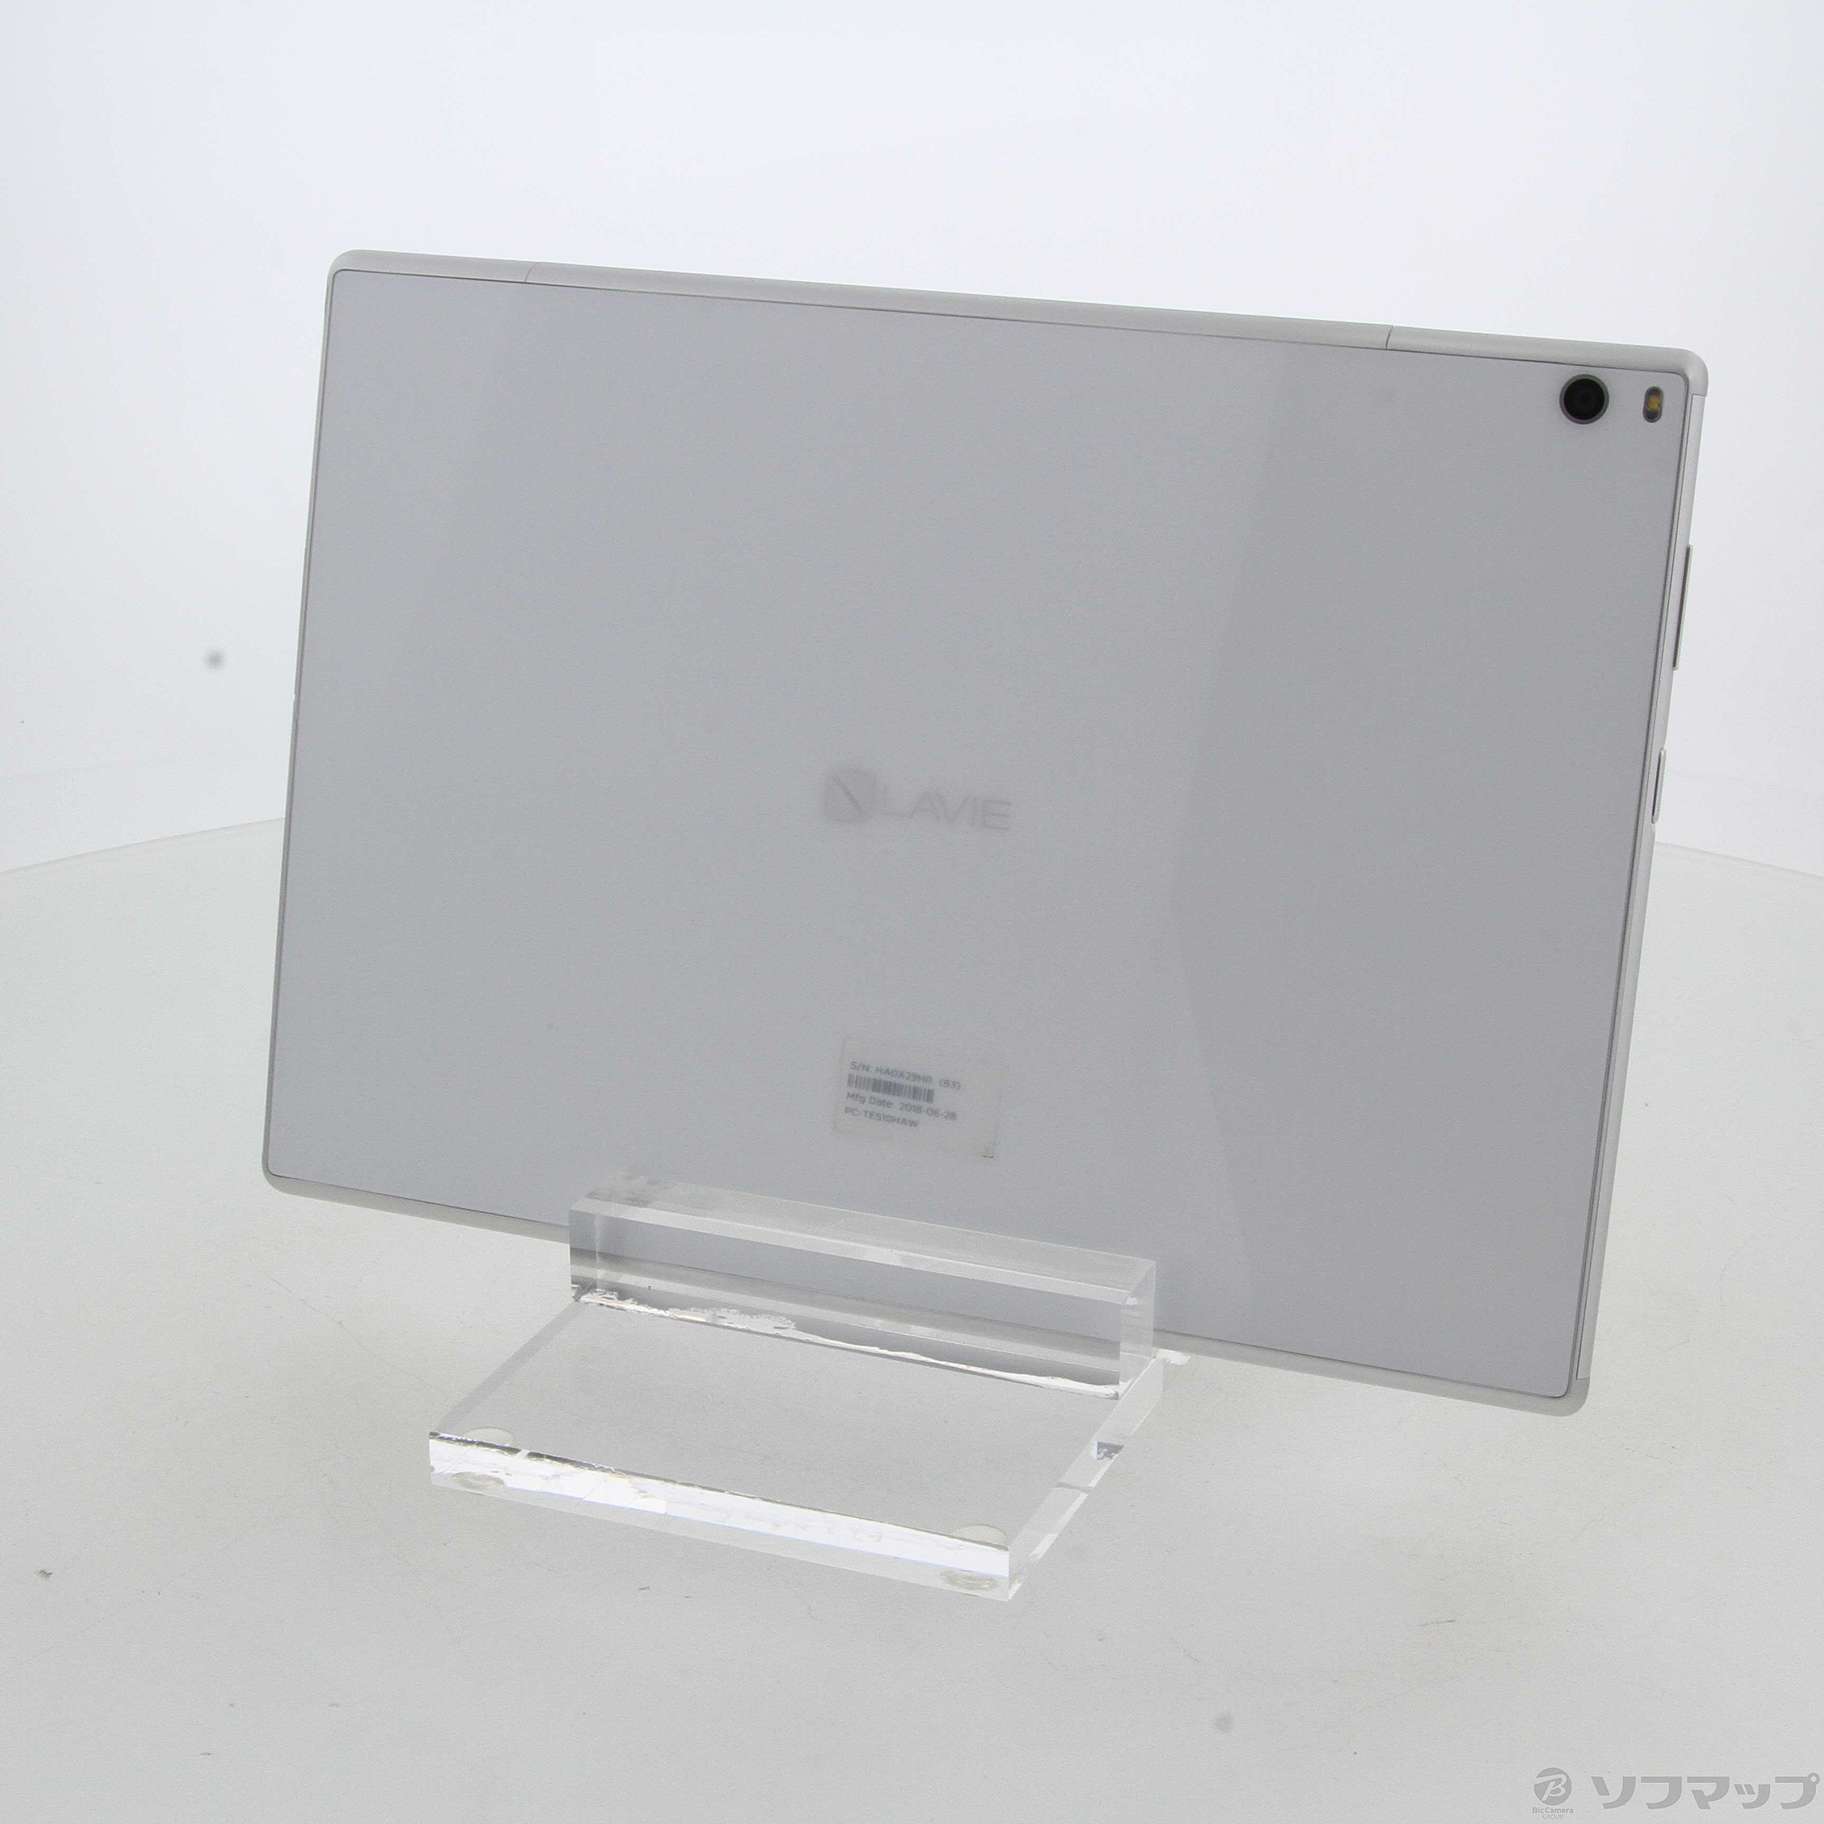 【中古】LaVie tab E 16GB ホワイト PC-TE510HAW Wi-Fi [2133038810889] - リコレ